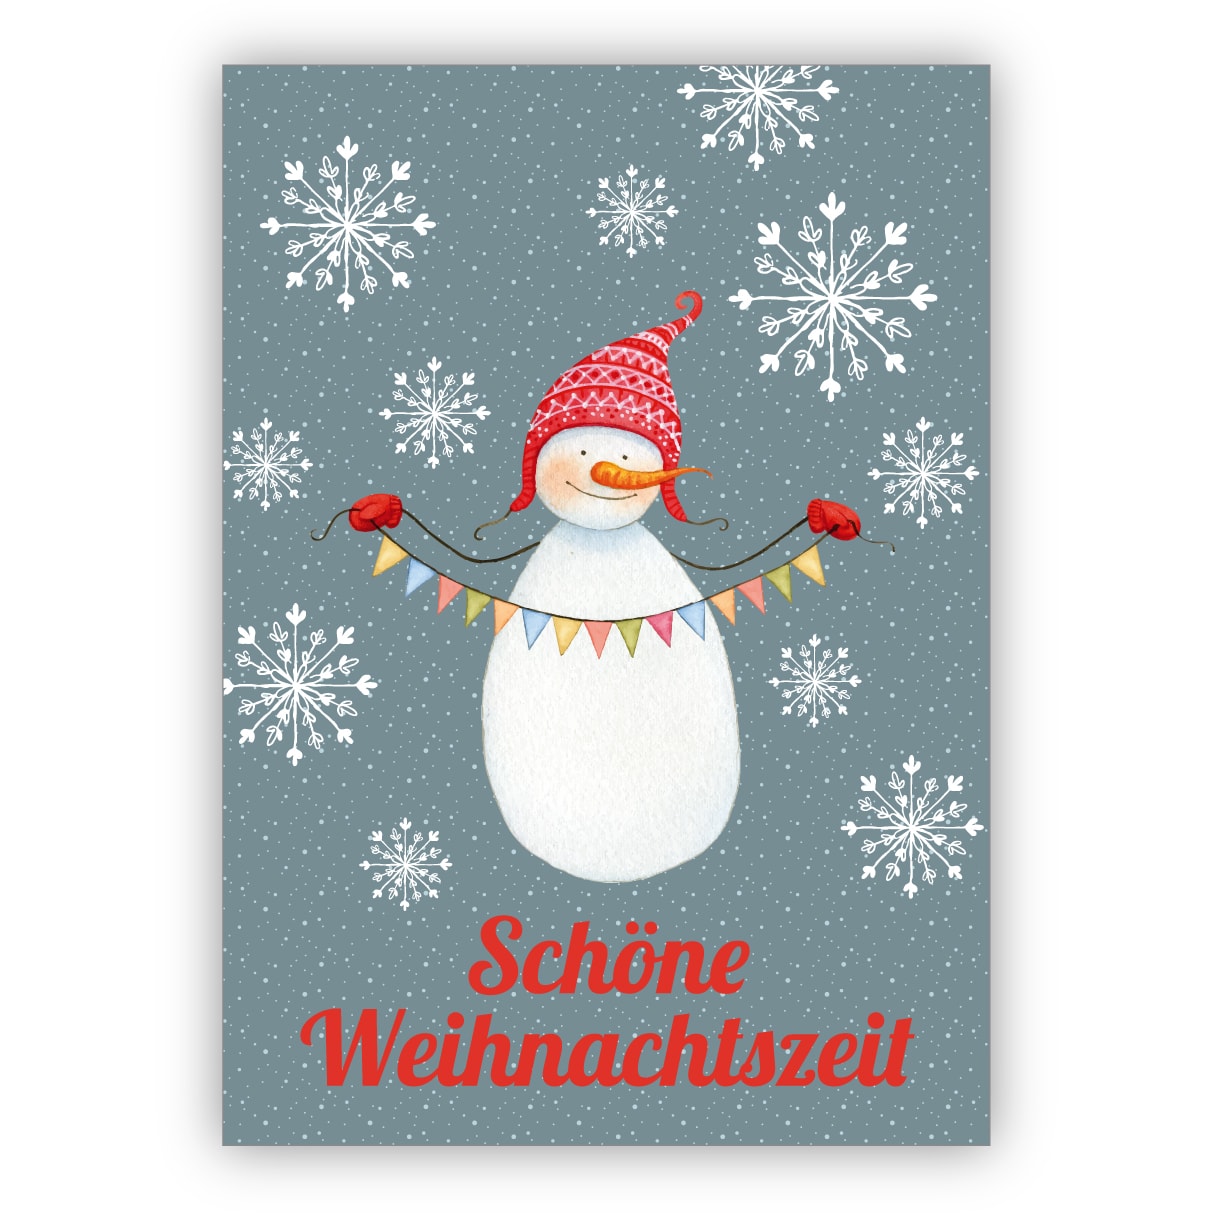 Total süße Weihnachtskarte mit Schneemann in Wintermütze schöne Weihnachtszeit